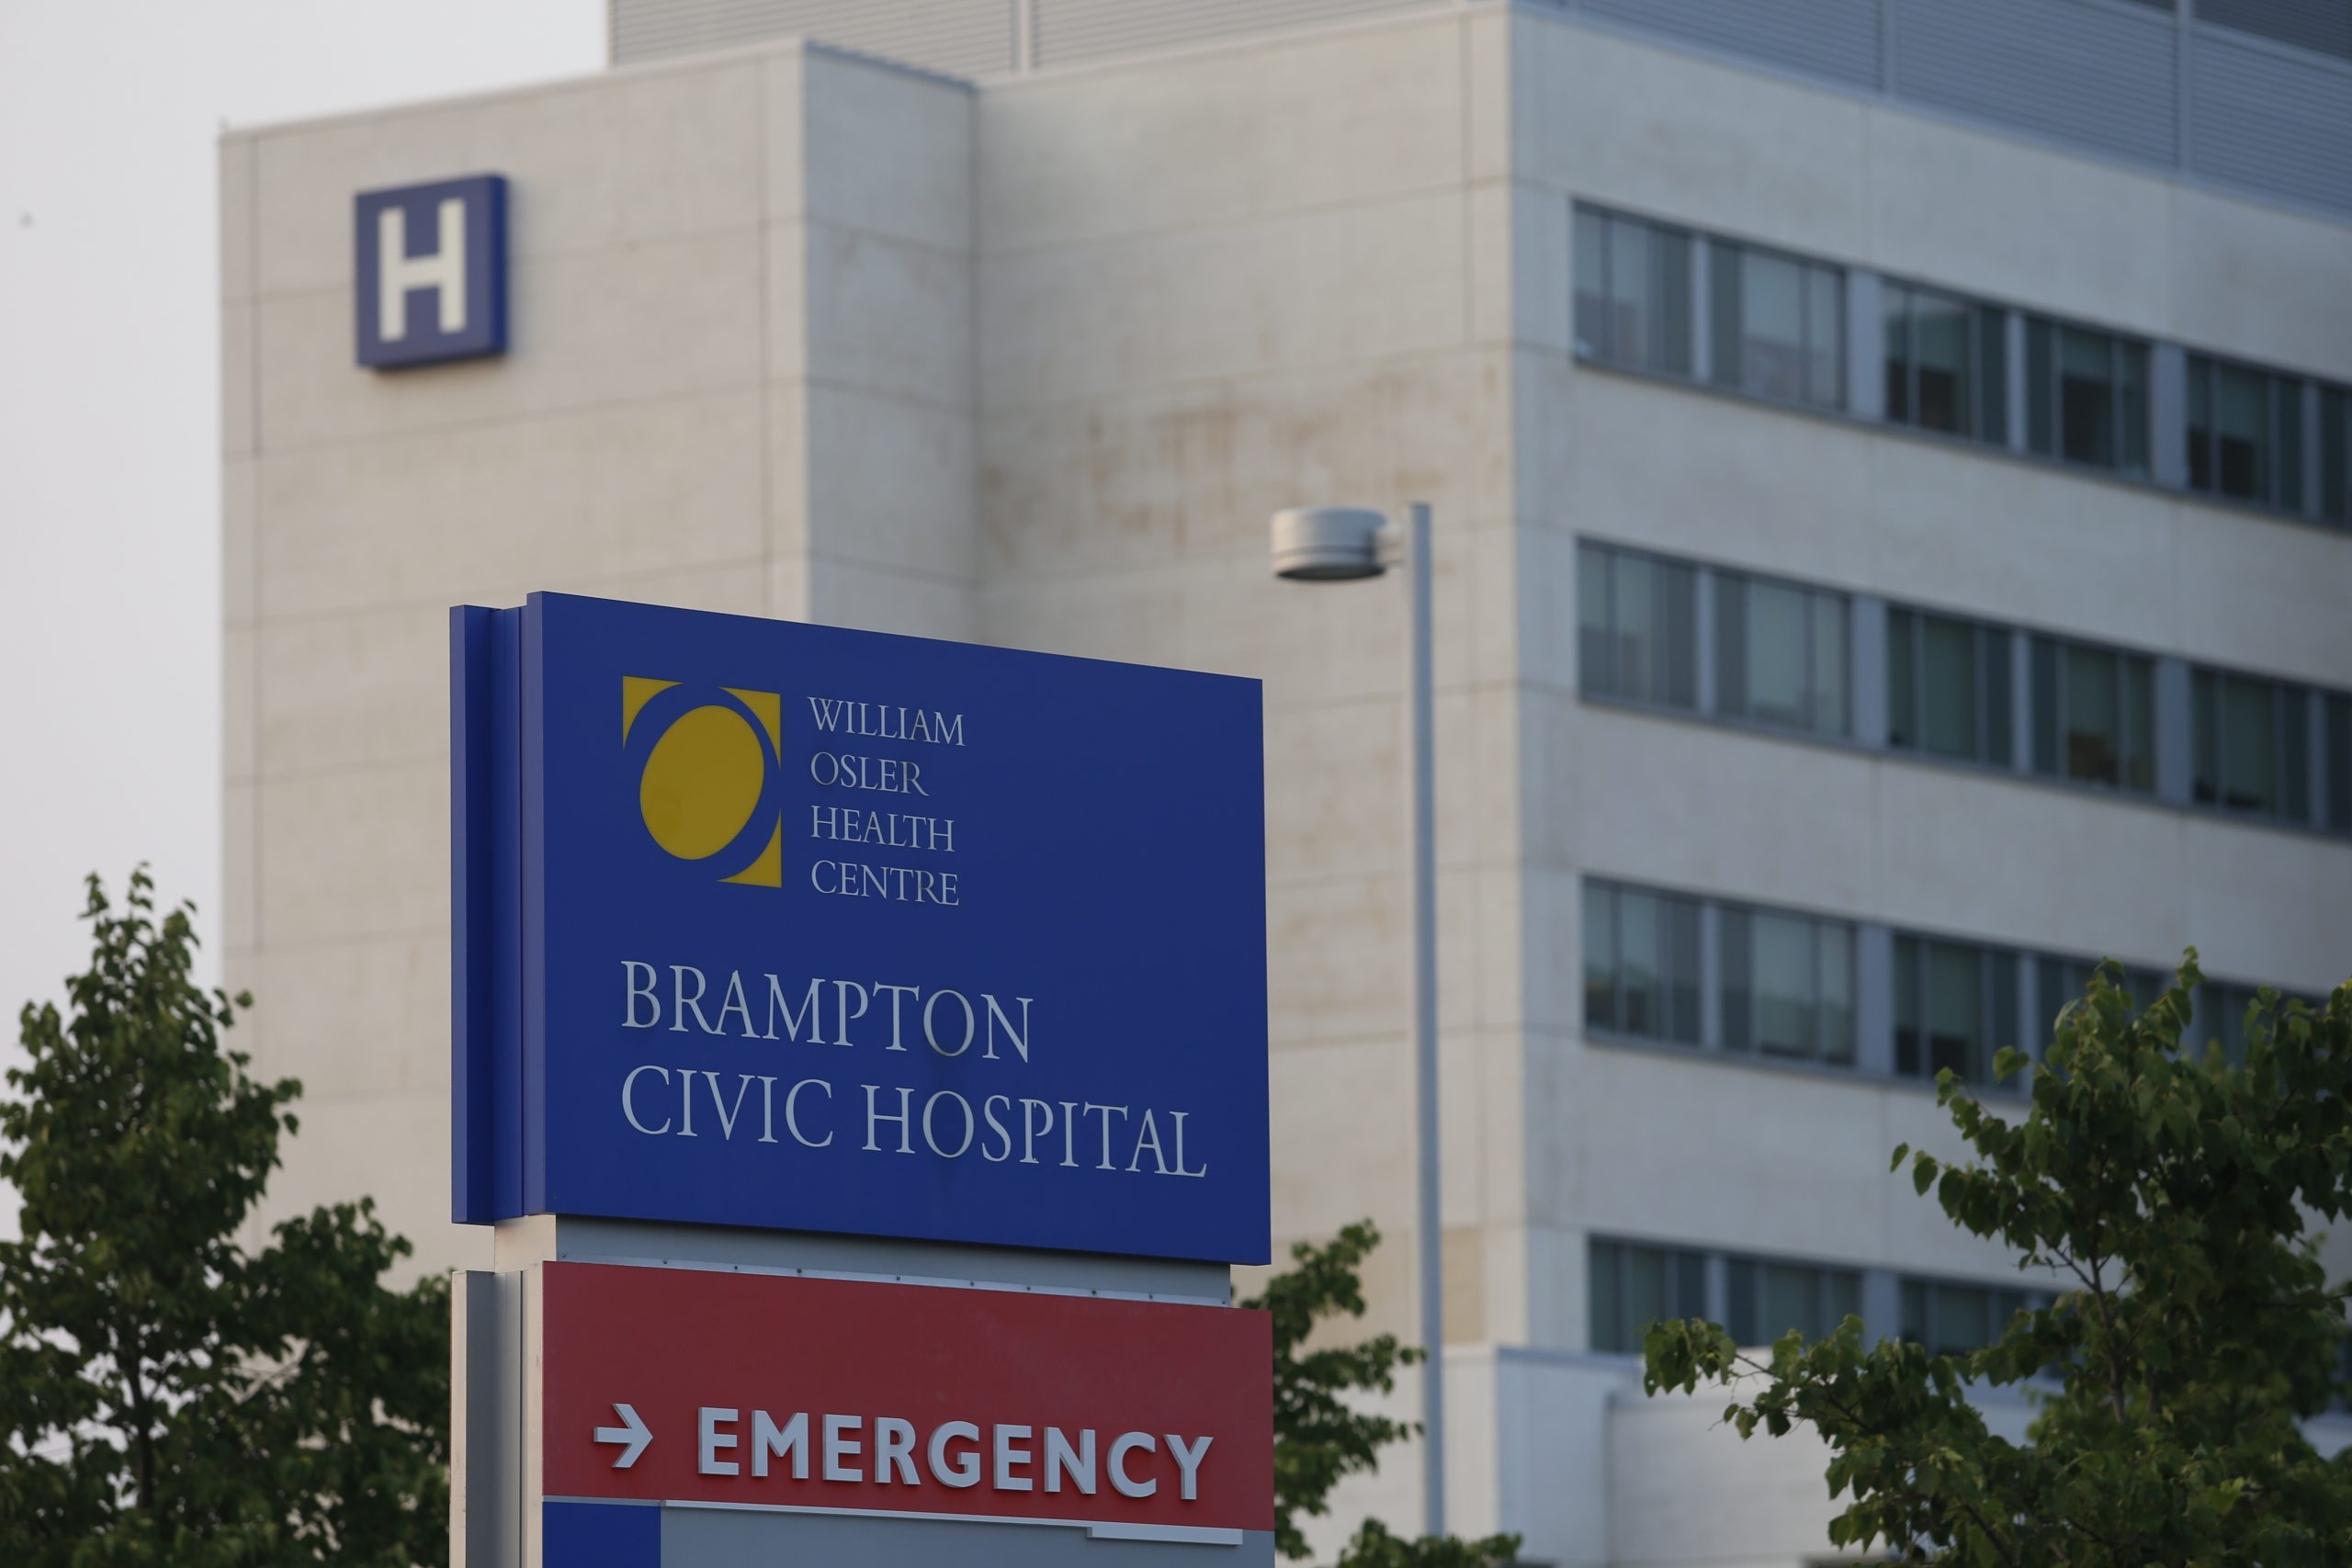 Les temps d’attente aux urgences des hôpitaux sont un signe de graves problèmes, selon le porte-parole du NPD en matière de santé